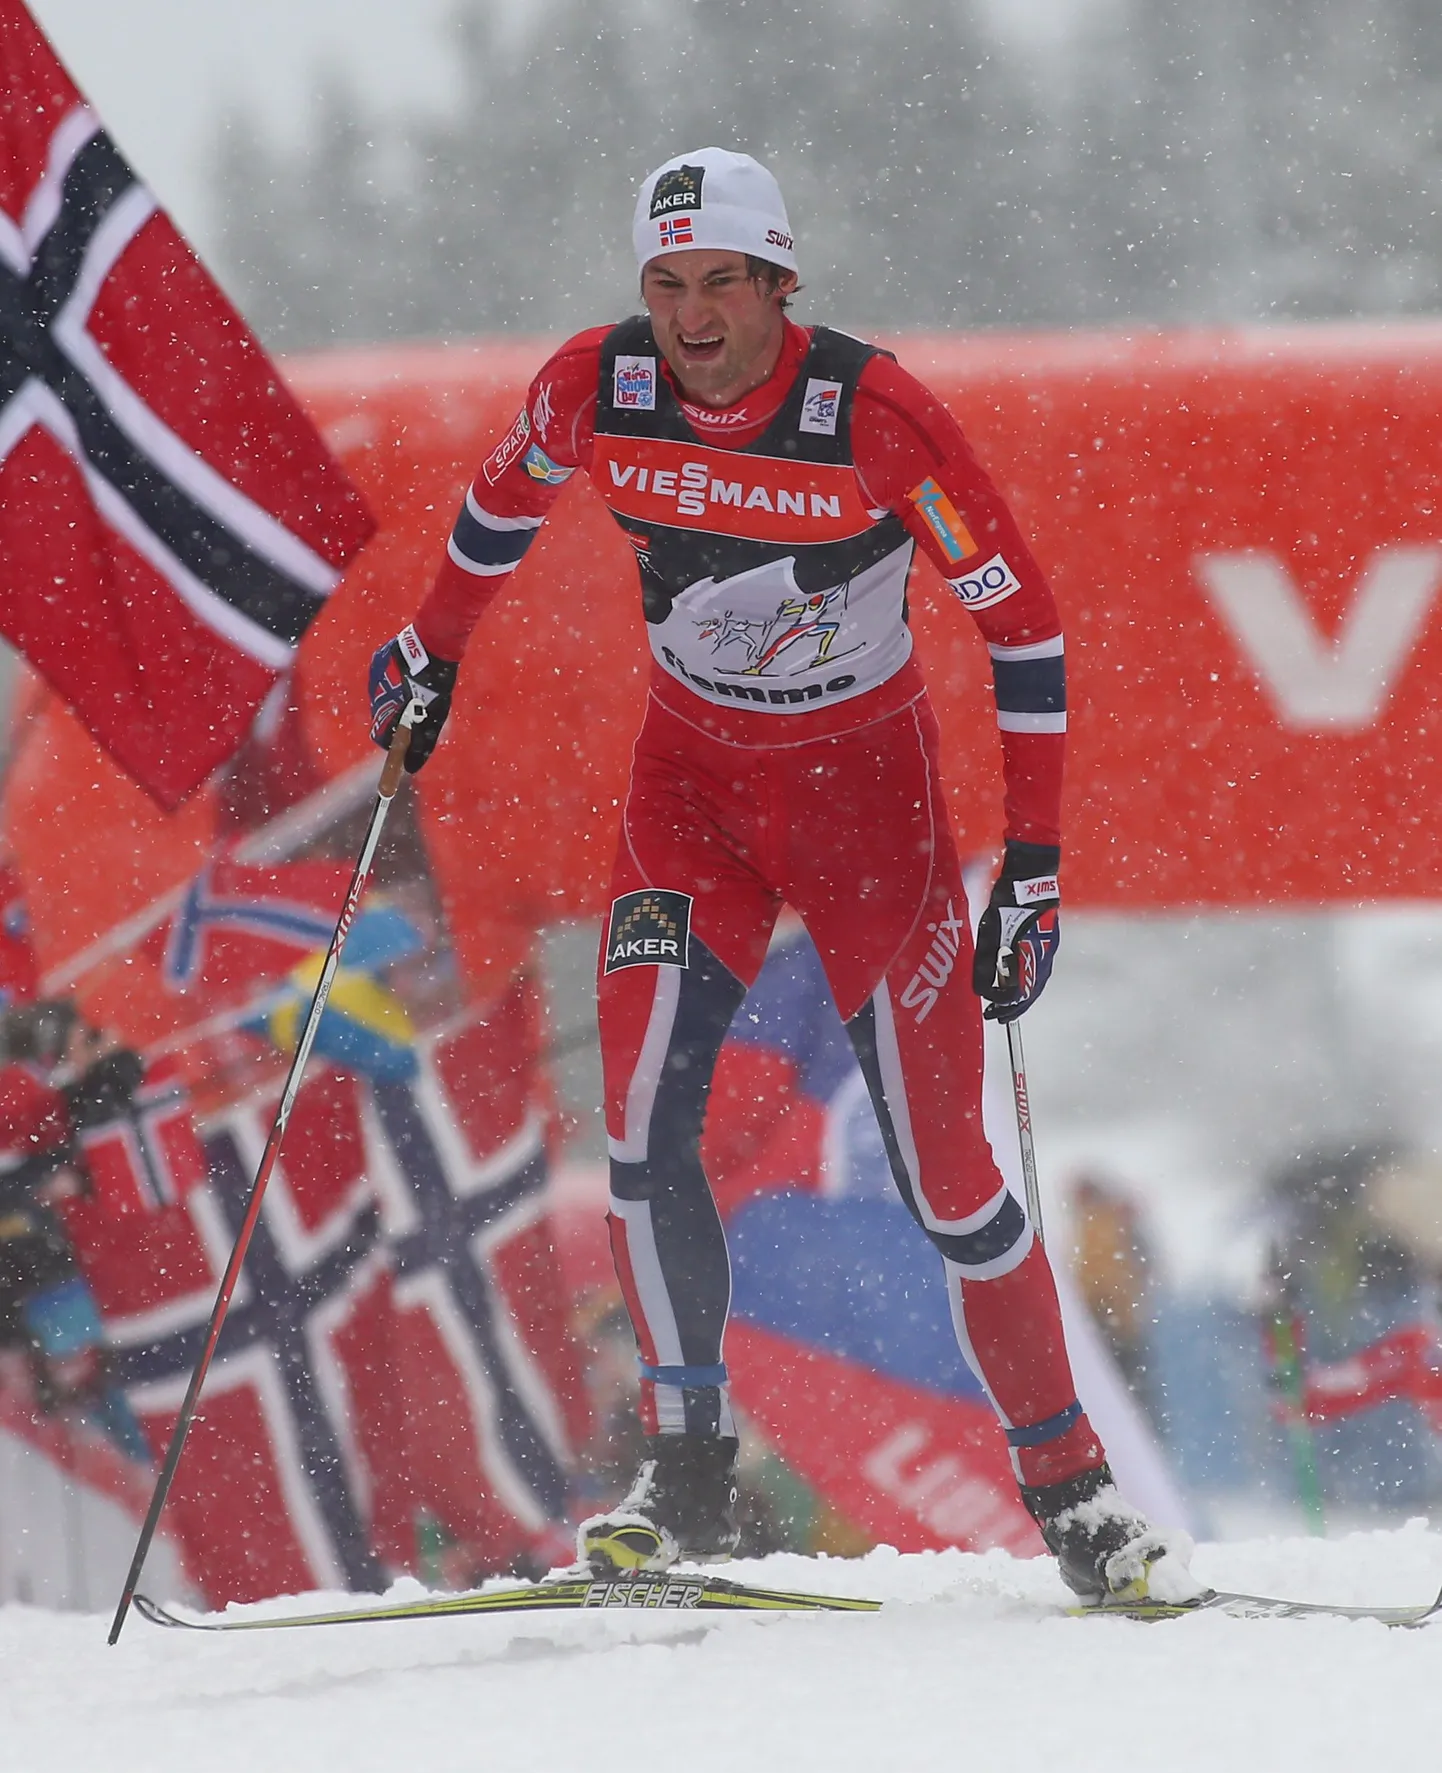 Tour de Ski viimast etappi teisena alustanud Petter Northug sai lõpuks kokkuvõttes neljanda koha.